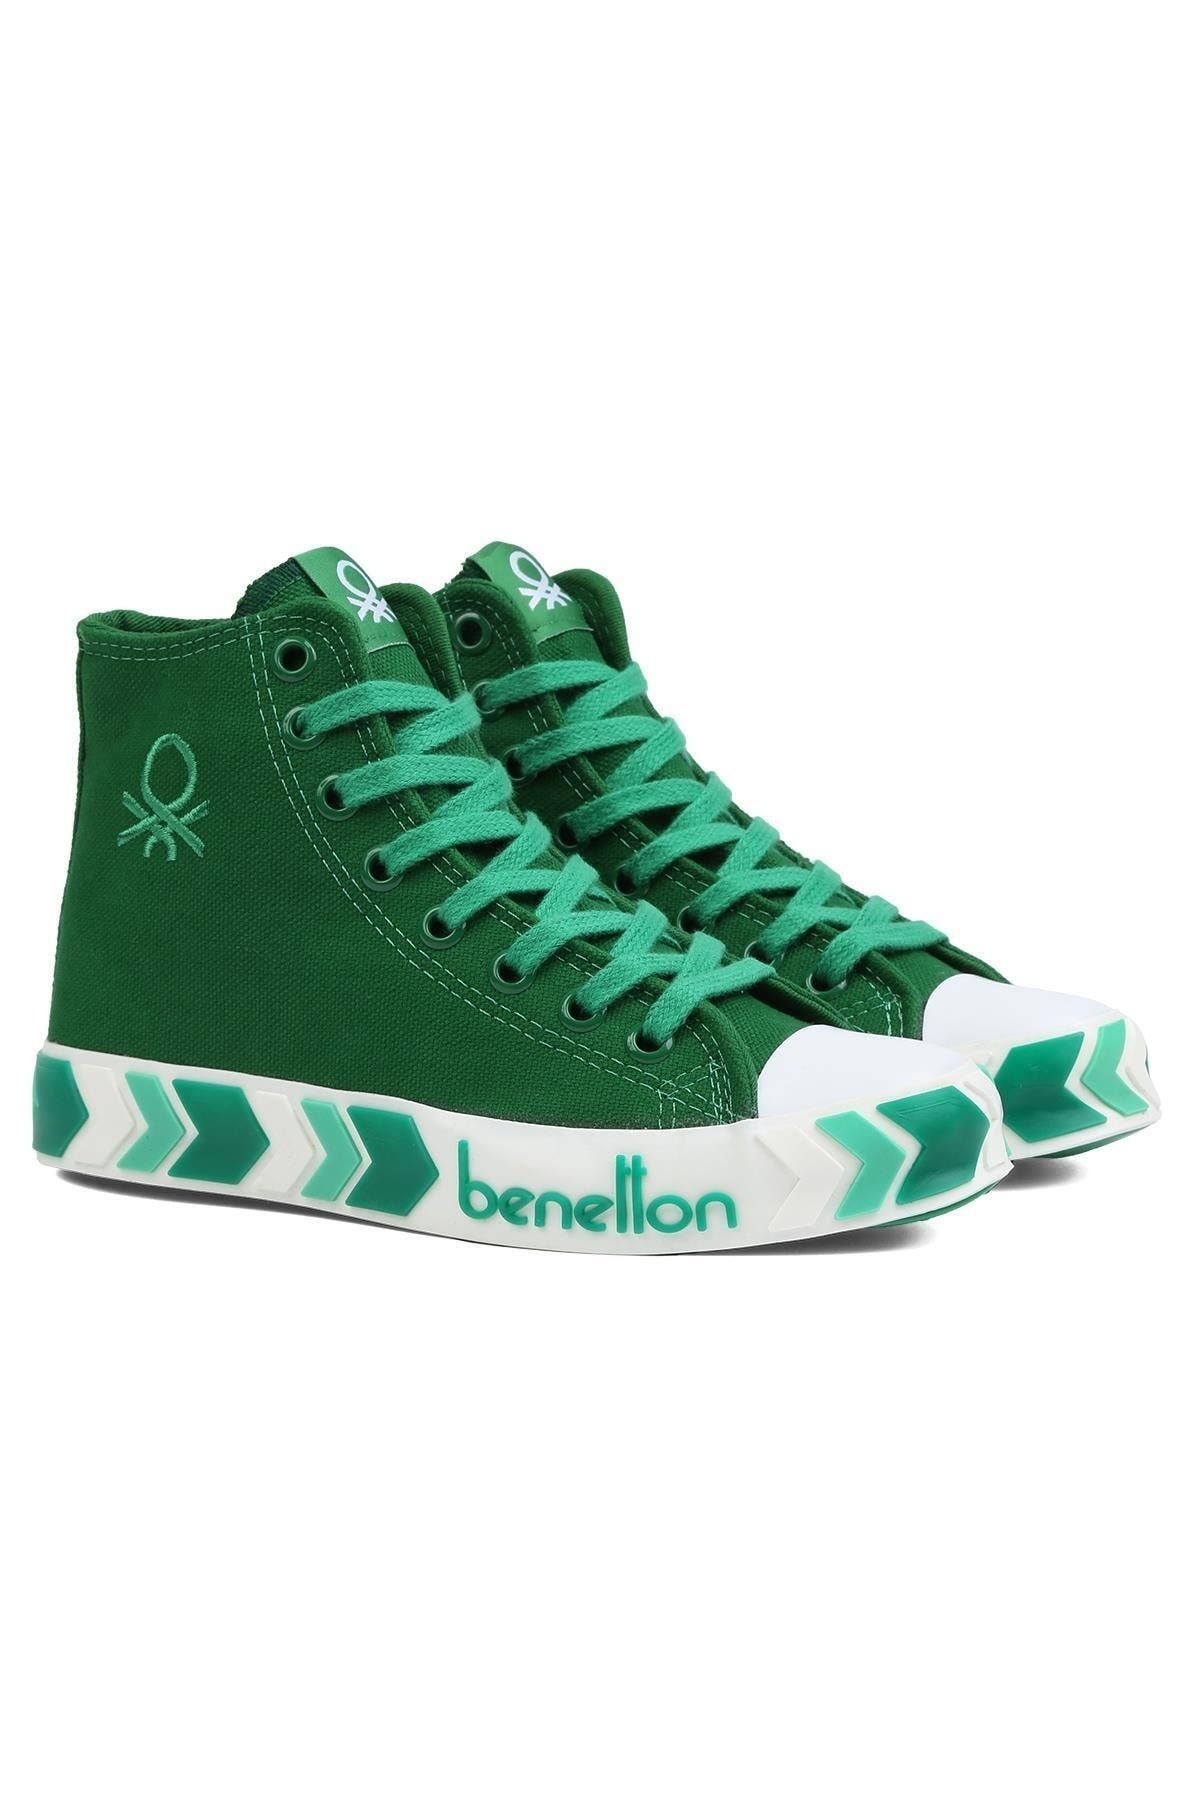 Benetton ® | BN-90621- Yesil - Kadın Spor Ayakkabı